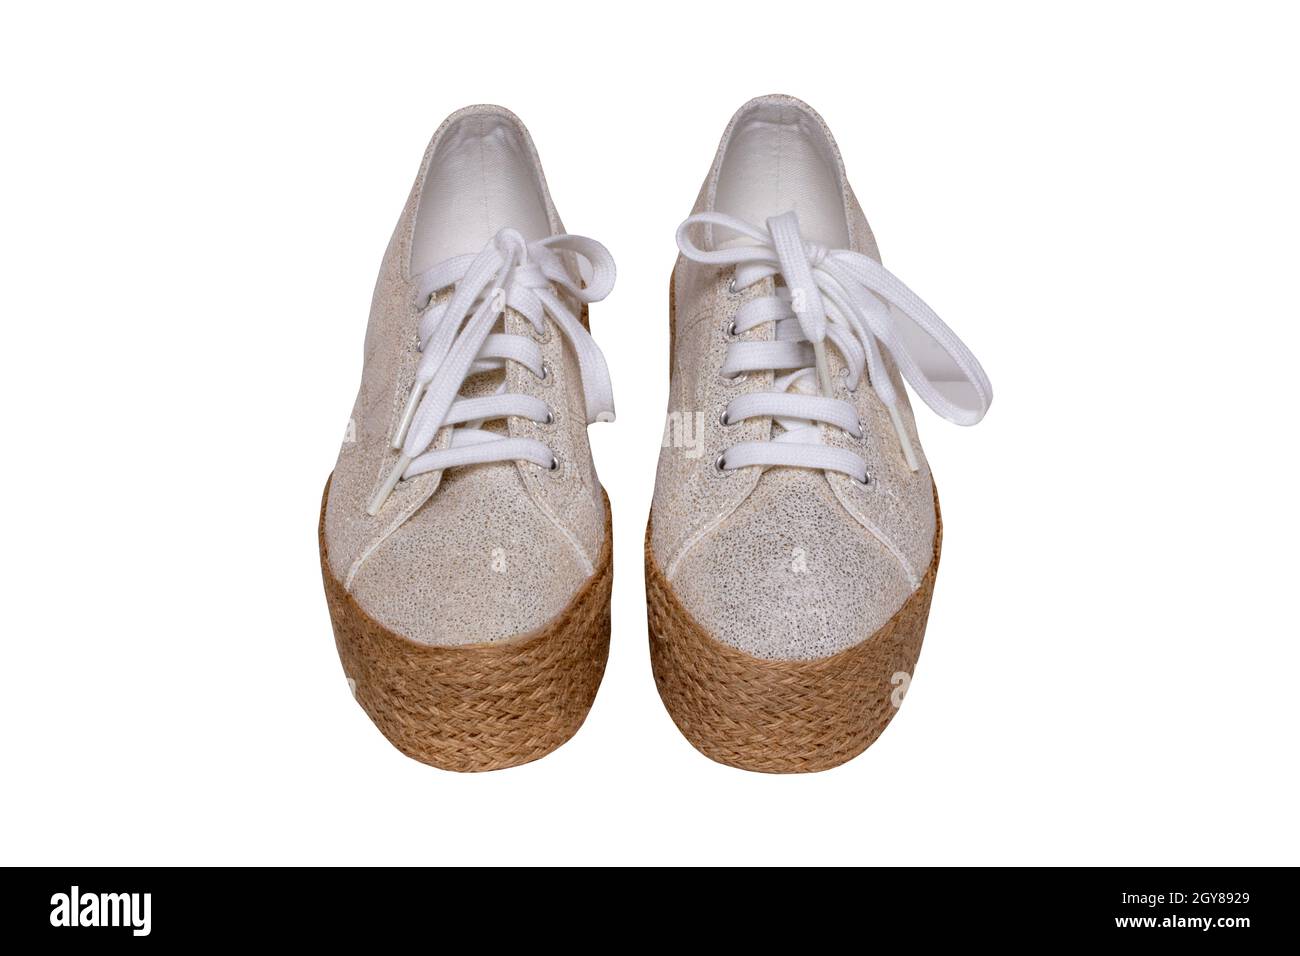 Zapatos blancos aislados. Primer plano de un par de zapatos de femenina elegante marrón blanco de tacón alto aislados sobre un fondo blanco. Zapatillas moda para MCR Fotografía de